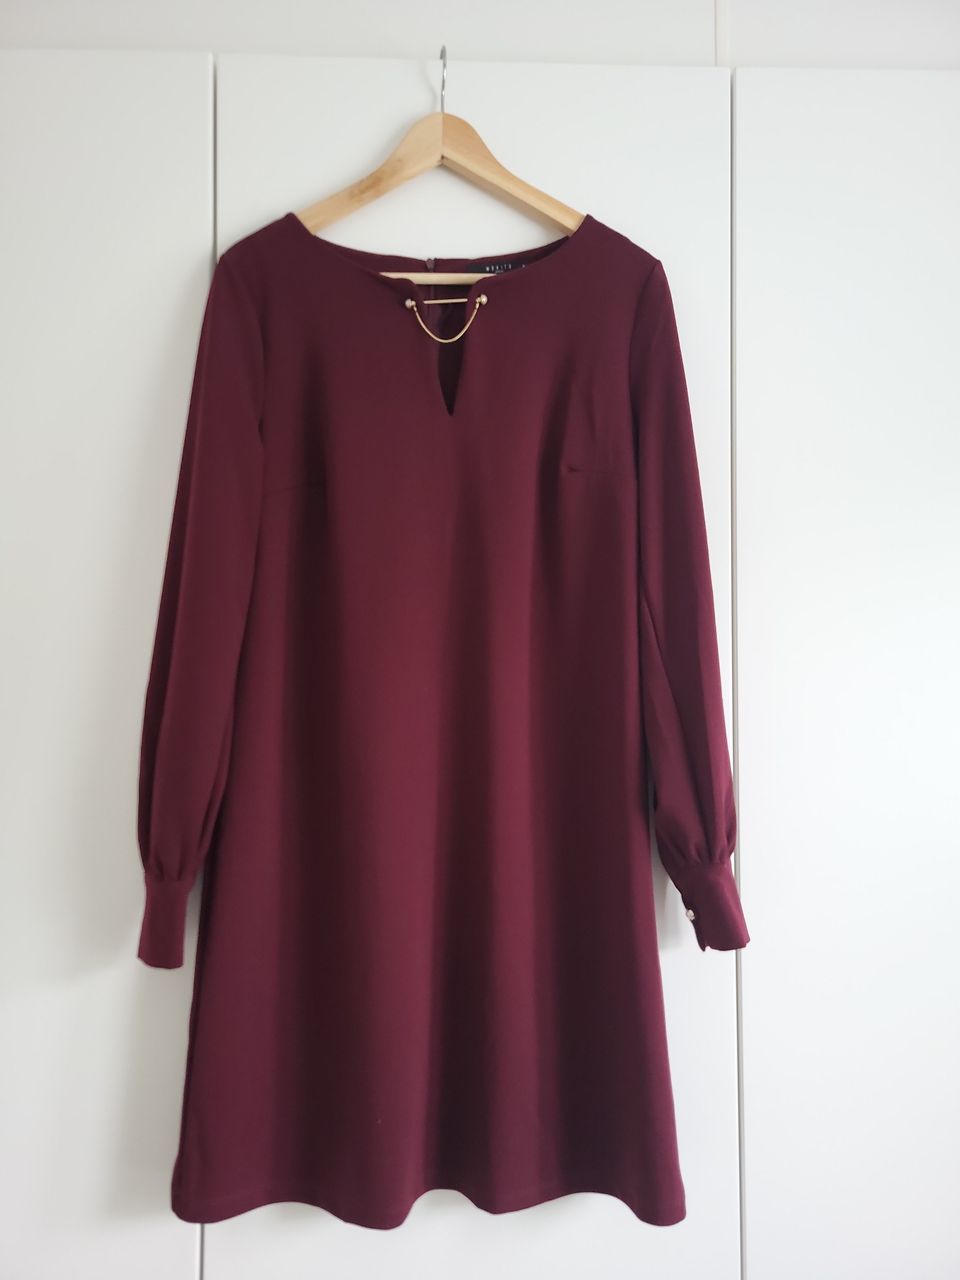 Burgundin punainen pitkähihainen mekko